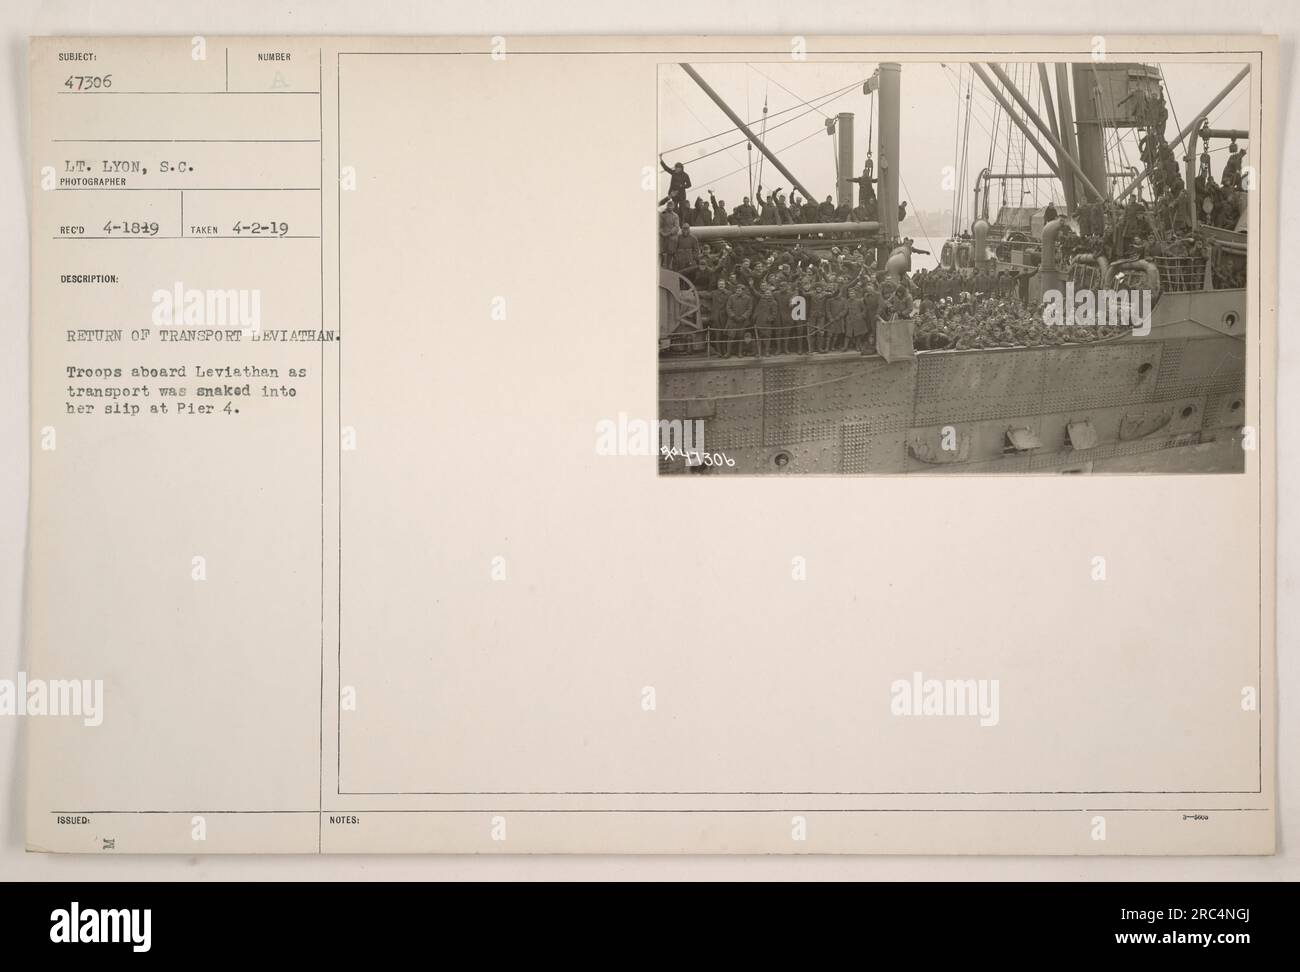 Truppen an Bord des Transportschiff Leviathan, das 1919 zum Pier 4 zurückkehrte. Das Foto, aufgenommen am 2. April 1919, zeigt den Moment, als das Schiff in ihren Ausrutscher geführt wurde. Lieutenant Lyon, der Fotograf, hat diese Szene aufgenommen. Auf dieses Bild wird in den Hinweisen 47306 verwiesen. Stockfoto